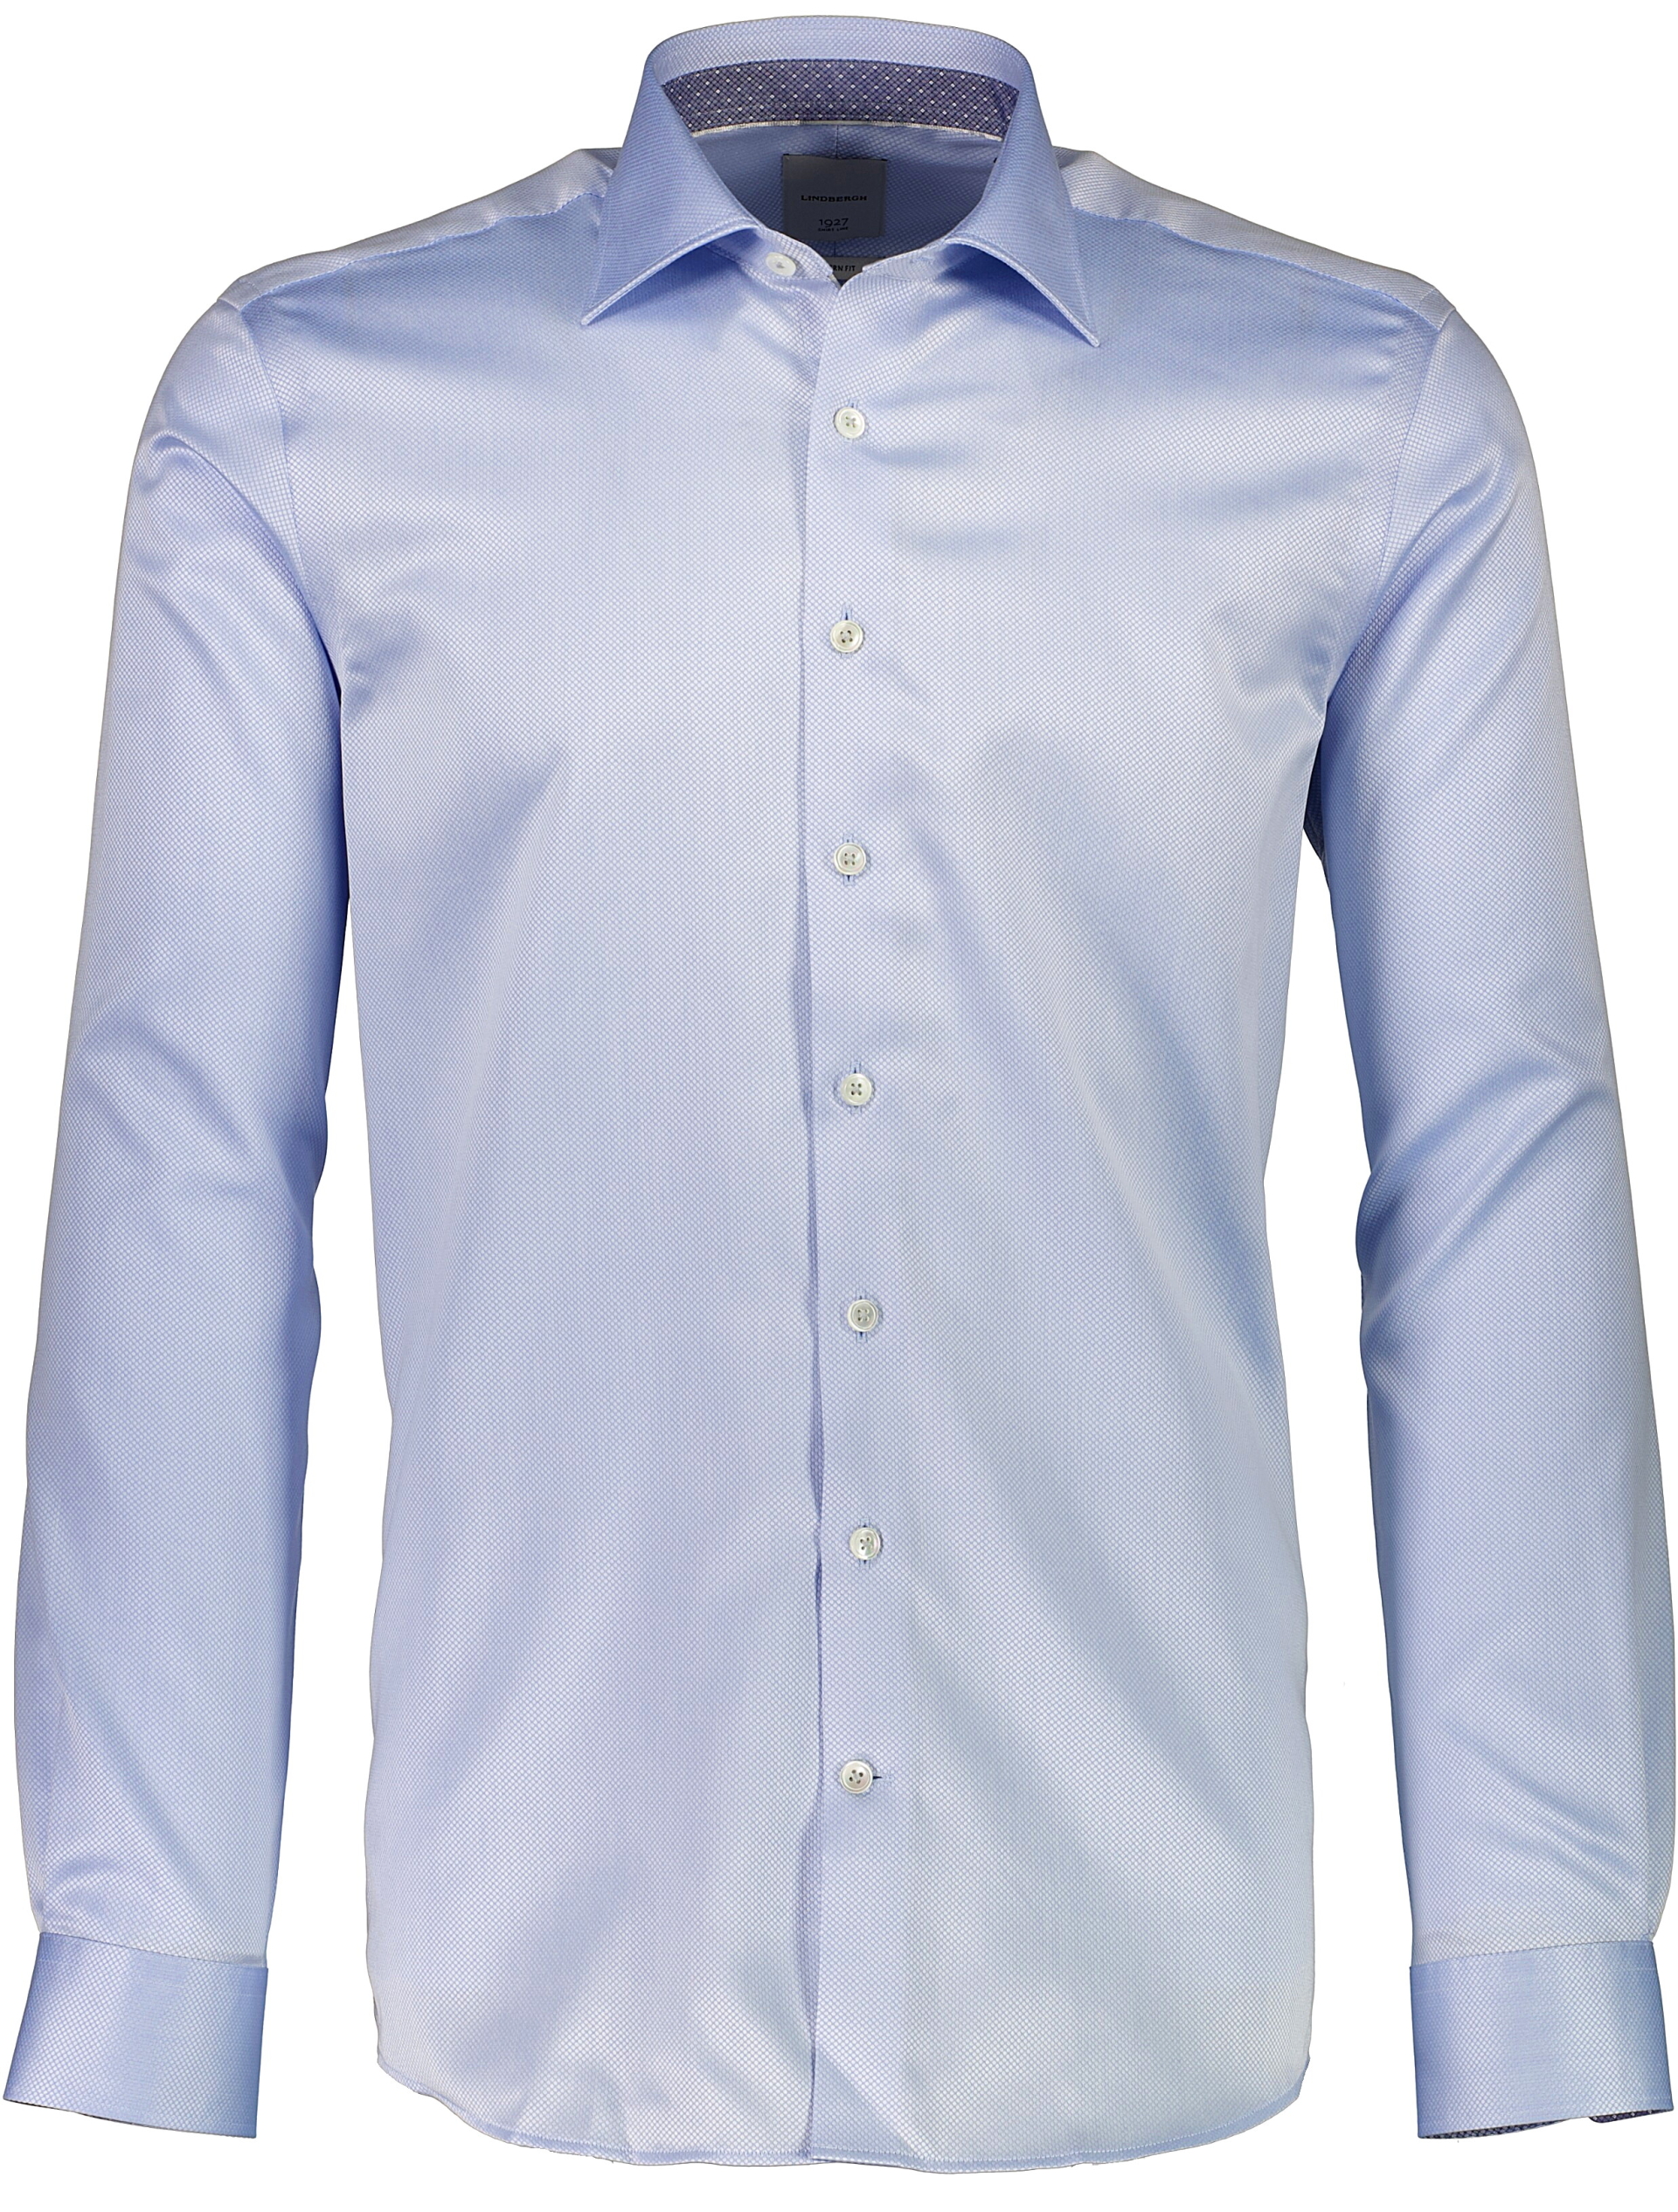 Lindbergh Business shirt blue / light blue